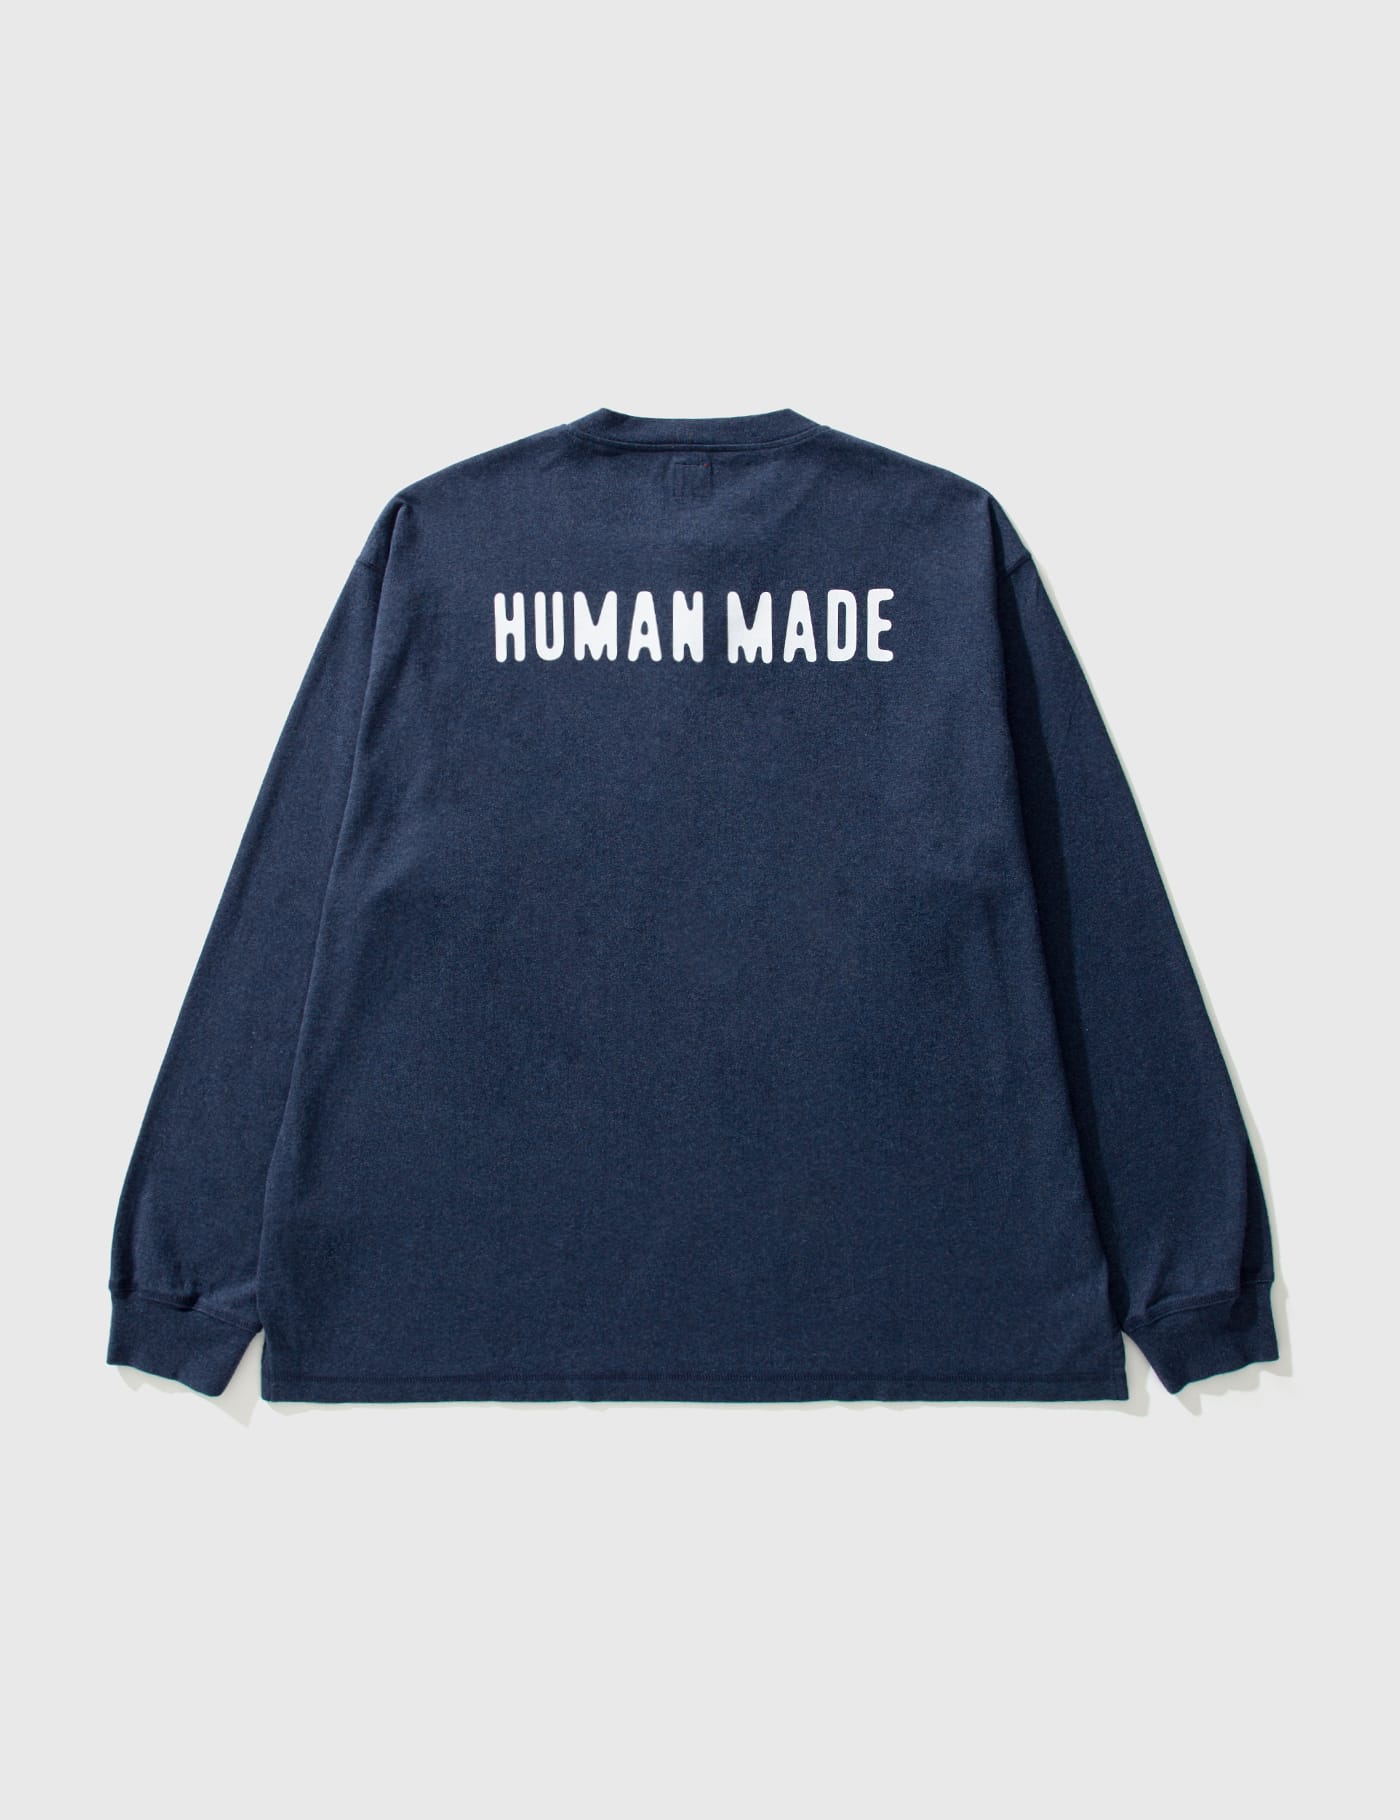 Human Made - ヘンリー ネックロング Tシャツ | HBX -  ハイプビースト(Hypebeast)が厳選したグローバルファッション&ライフスタイル